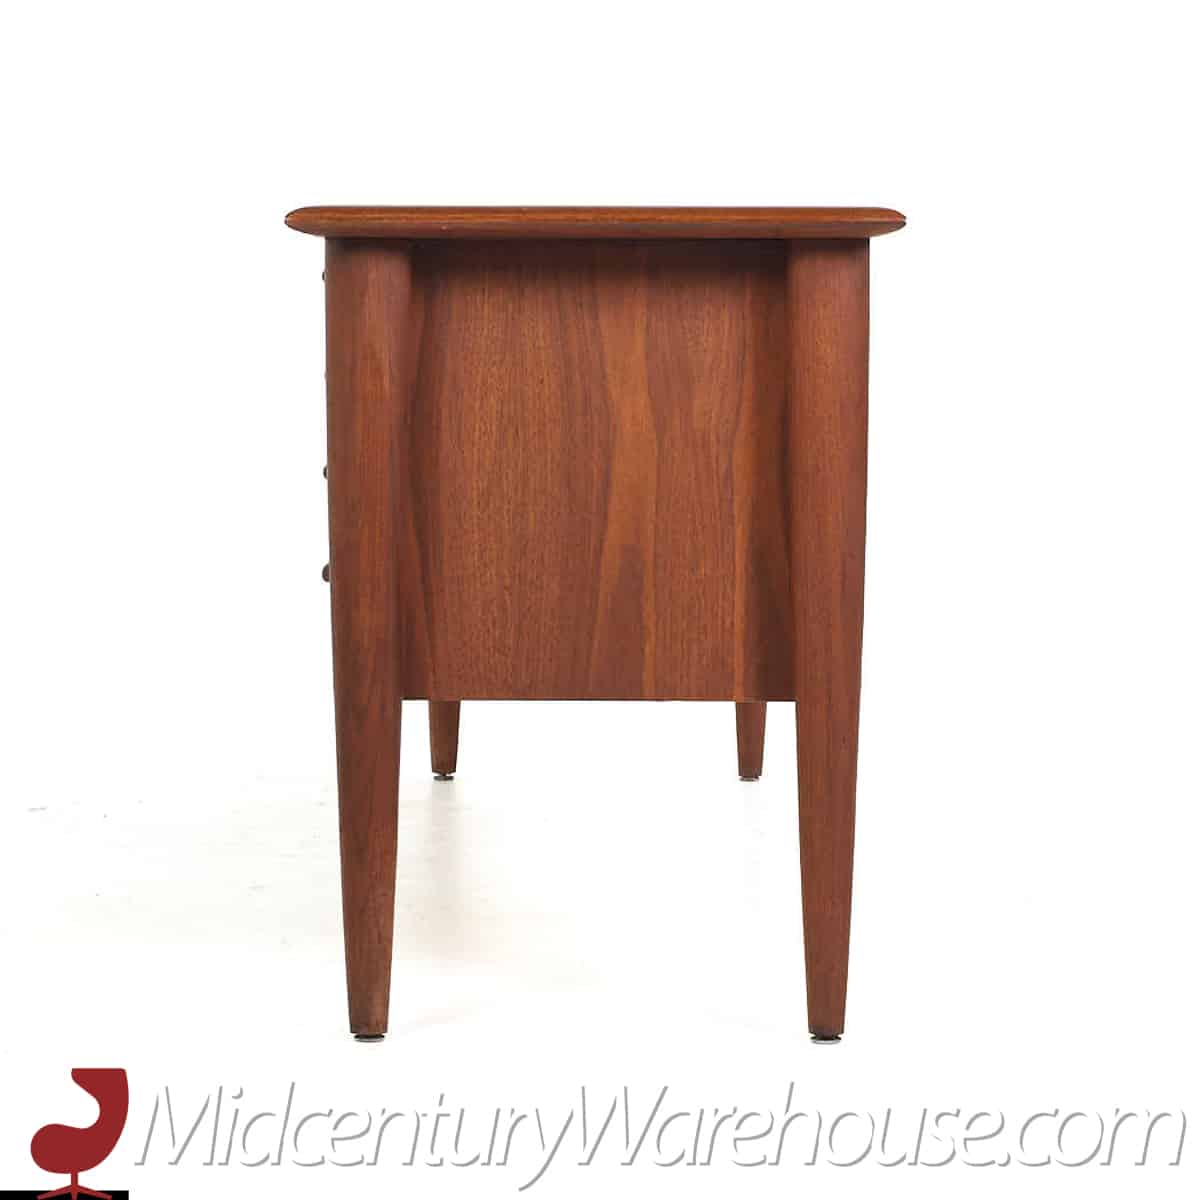 Standard Furniture Mid Century Walnut Credenza